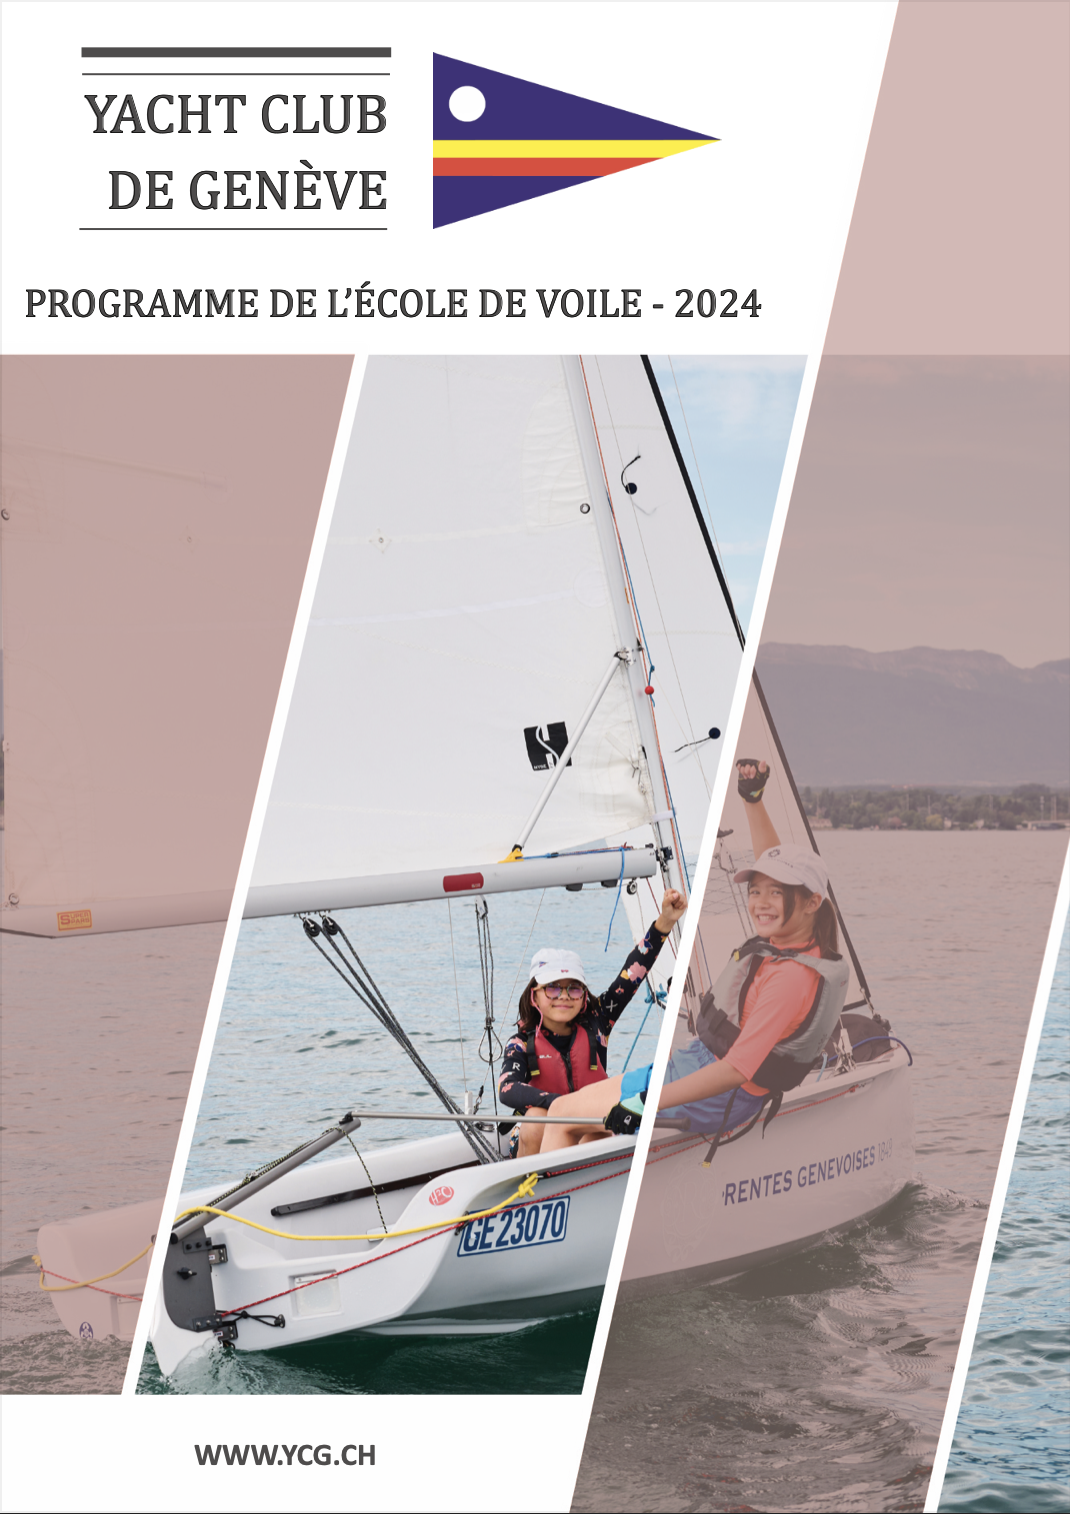 Couverture brochure EDV 2021